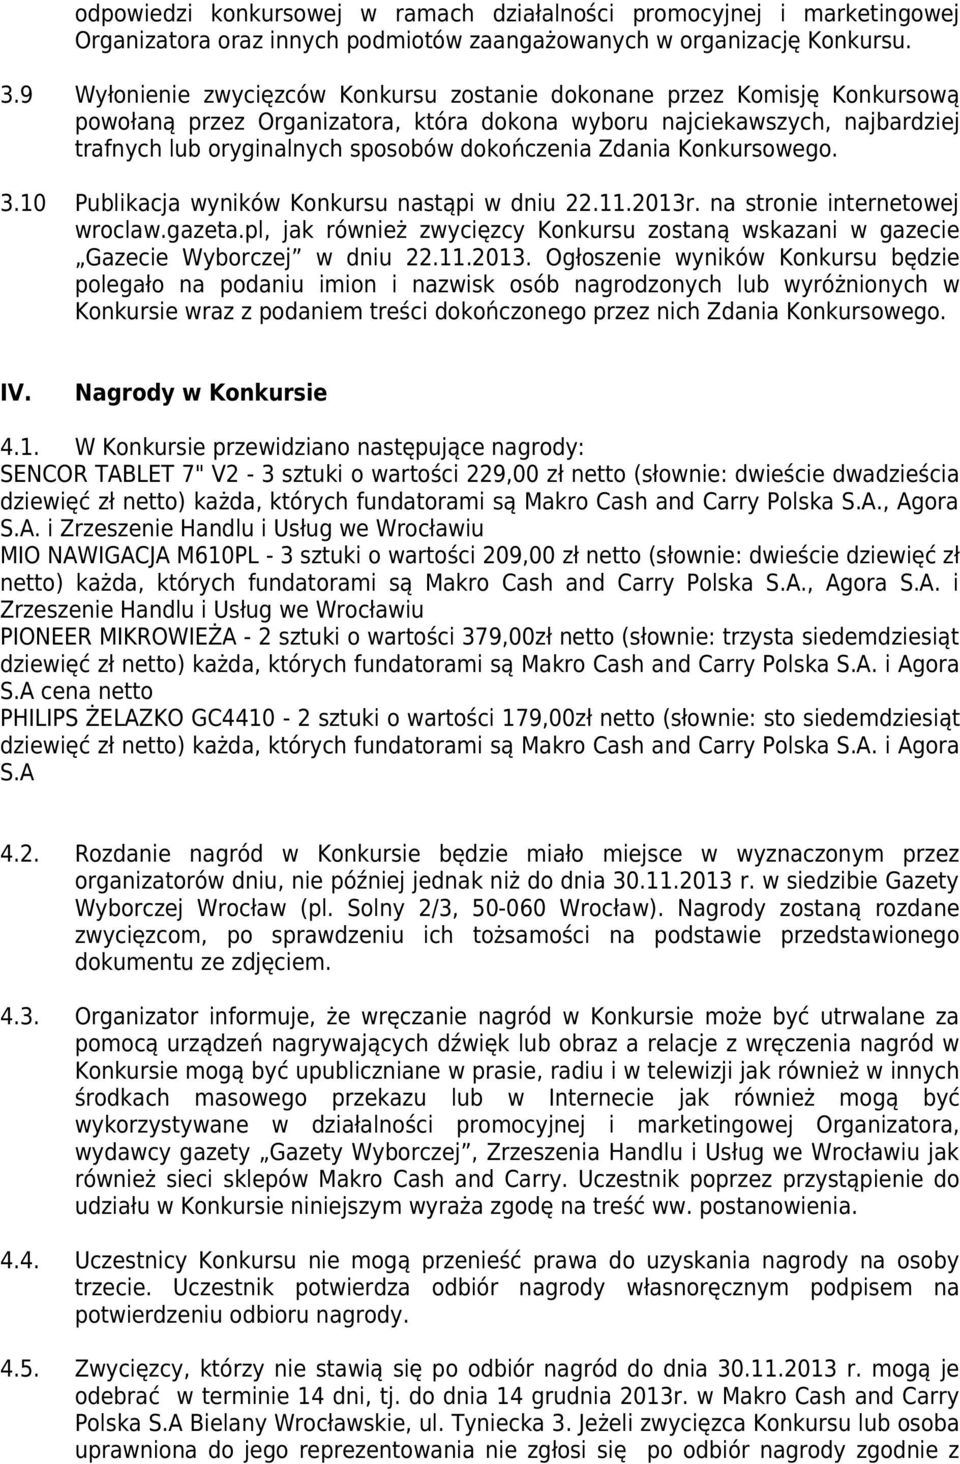 Zdania Konkursowego. 3.10 Publikacja wyników Konkursu nastąpi w dniu 22.11.2013r. na stronie internetowej wroclaw.gazeta.